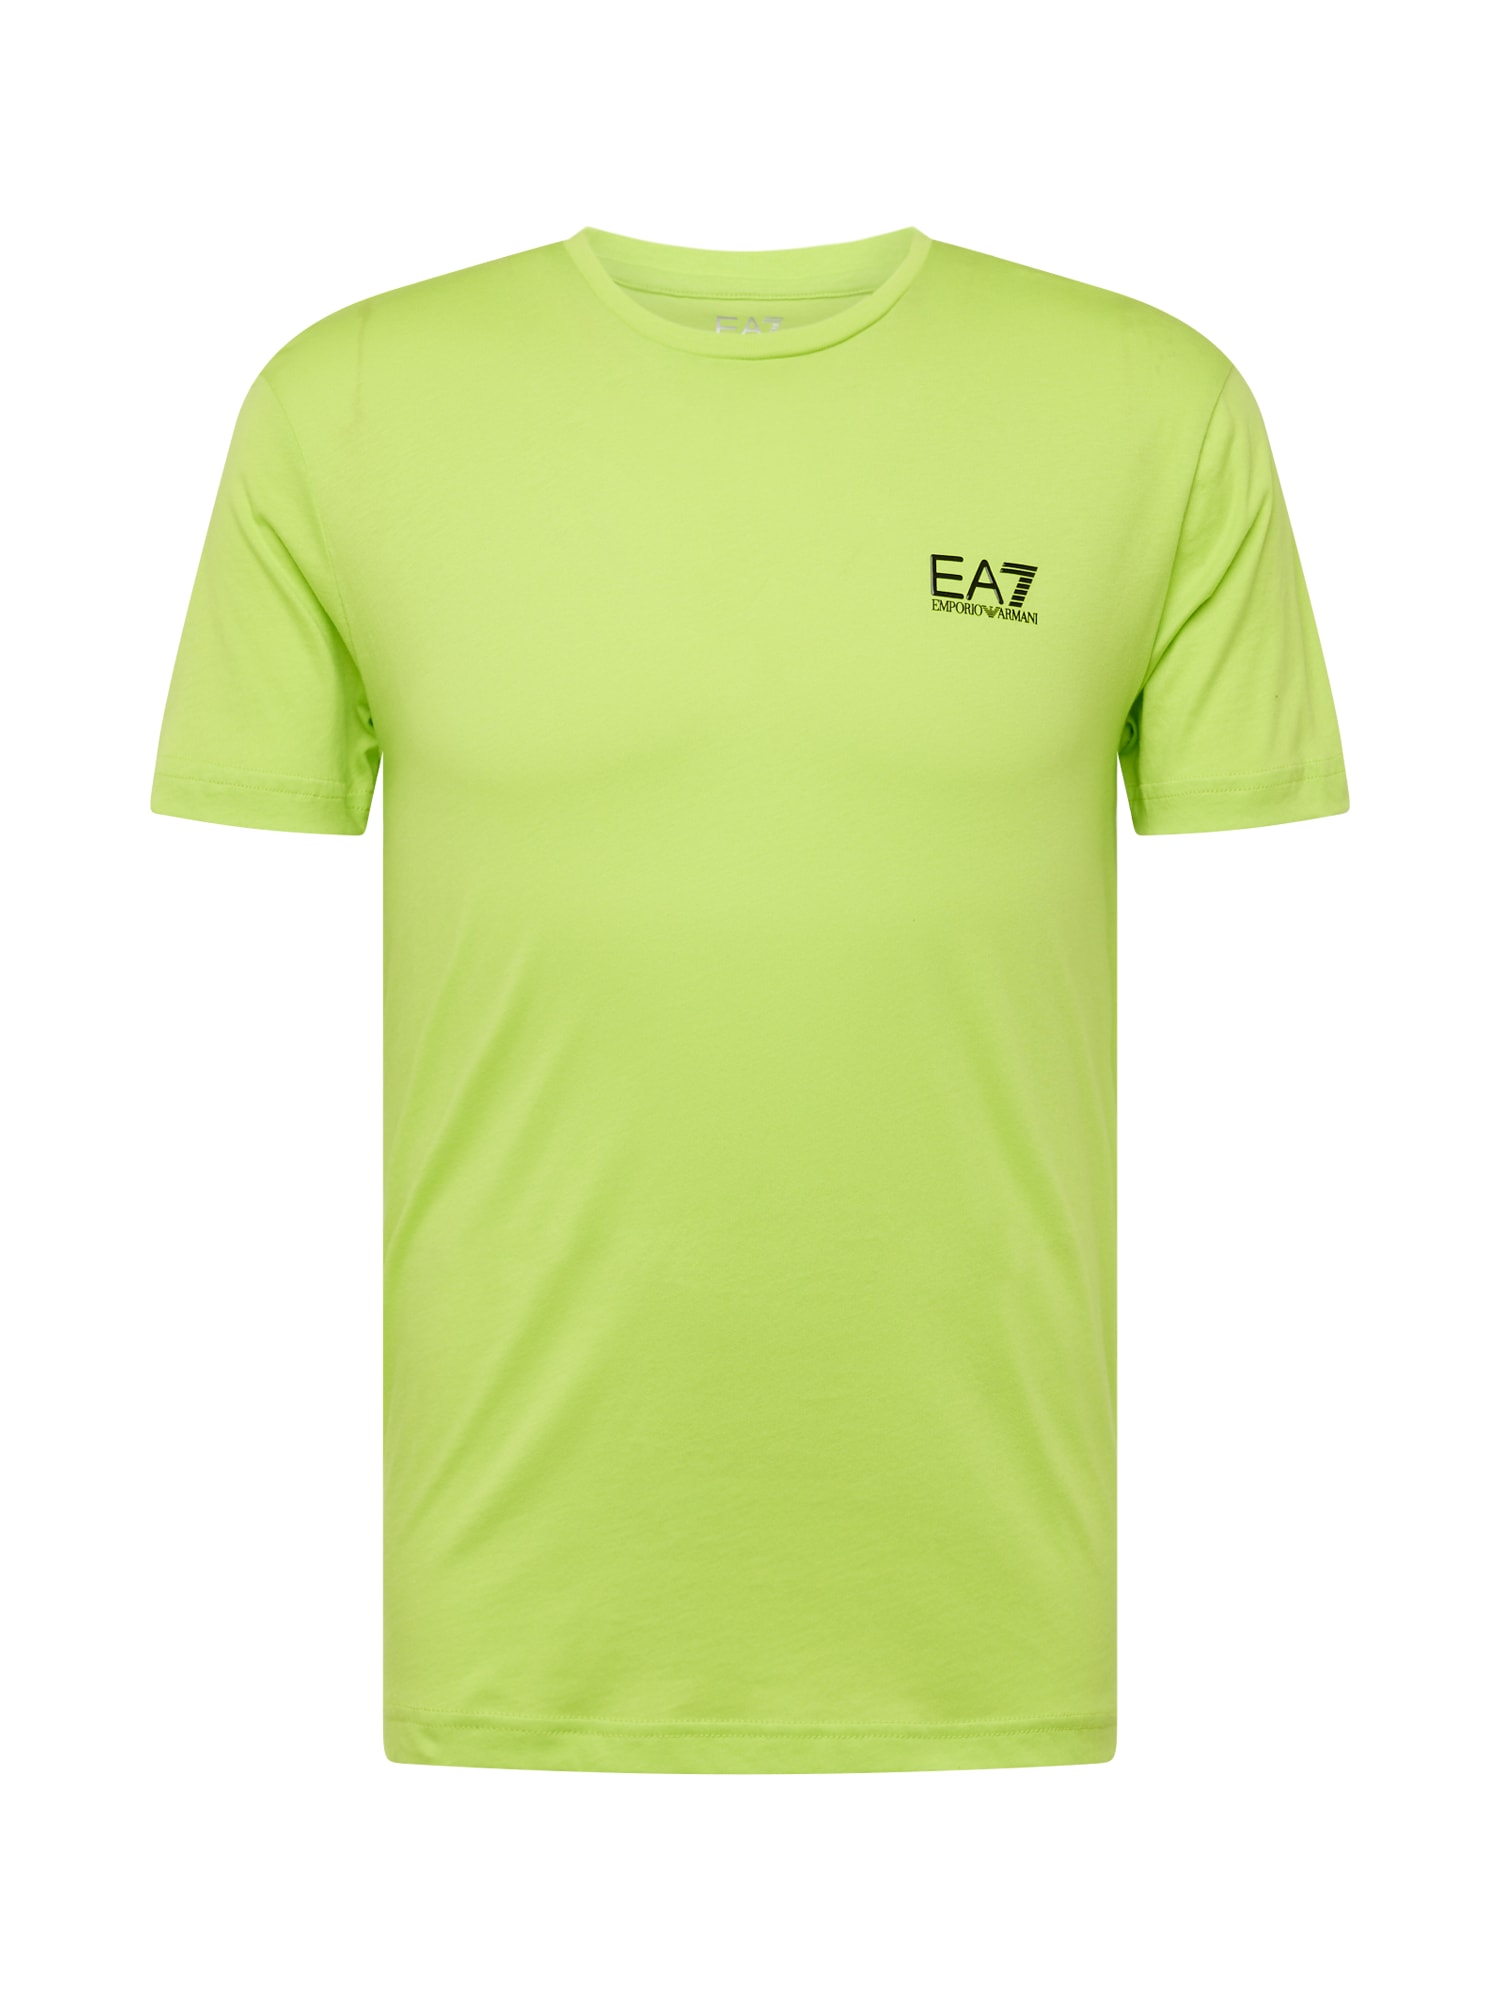 EA7 Emporio Armani Marškinėliai žaliosios citrinos spalva / juoda